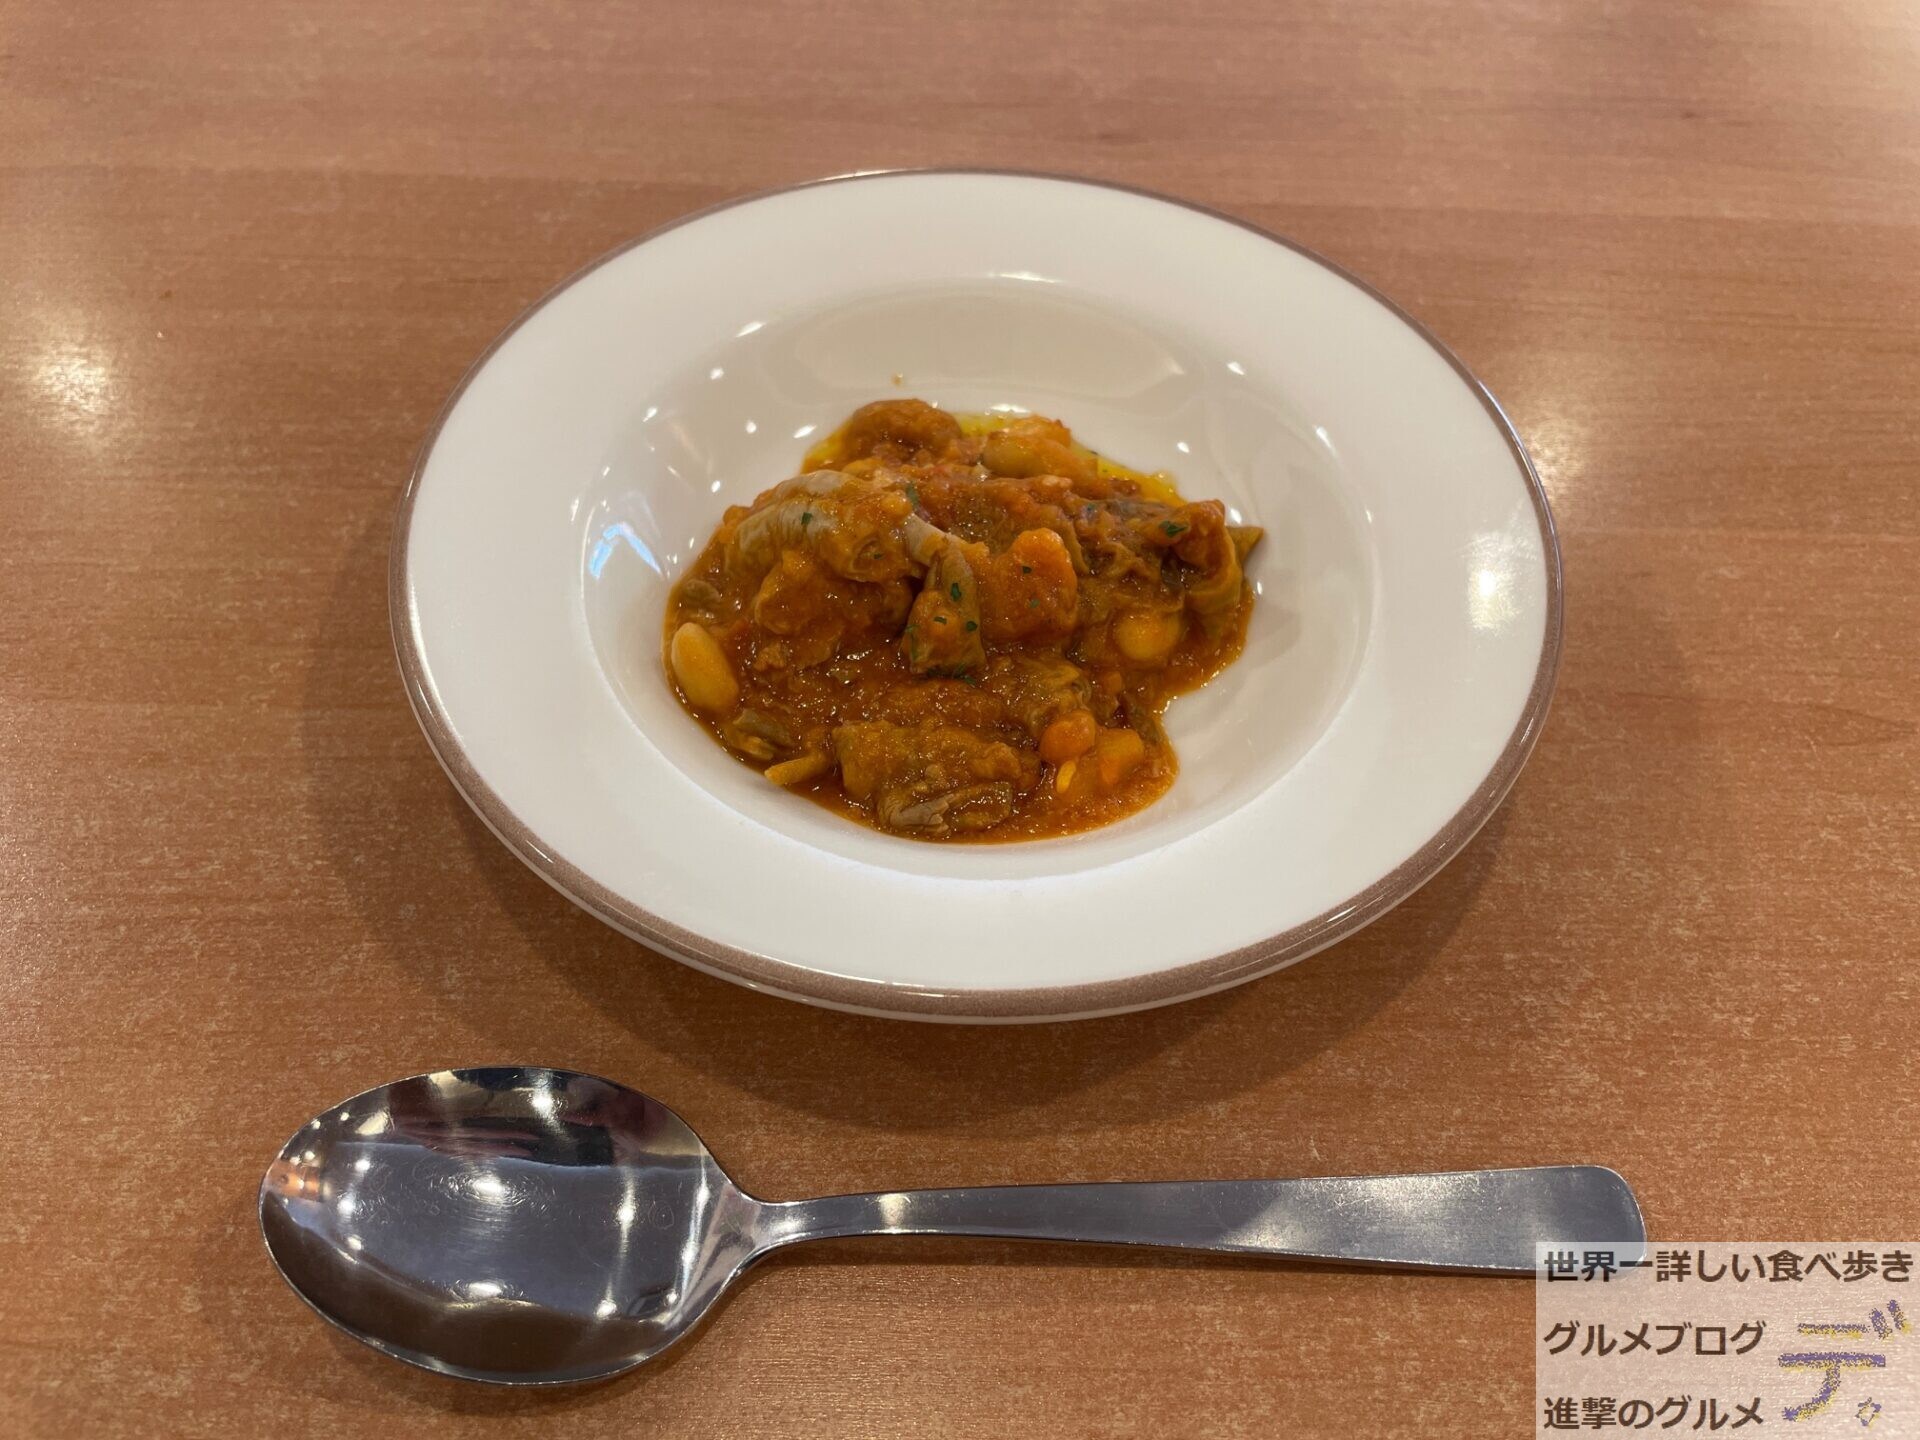 イタリア風もつ煮込み サイゼがオススメするメニューを実食 進撃のグルメ Yahoo Japan クリエイターズプログラム